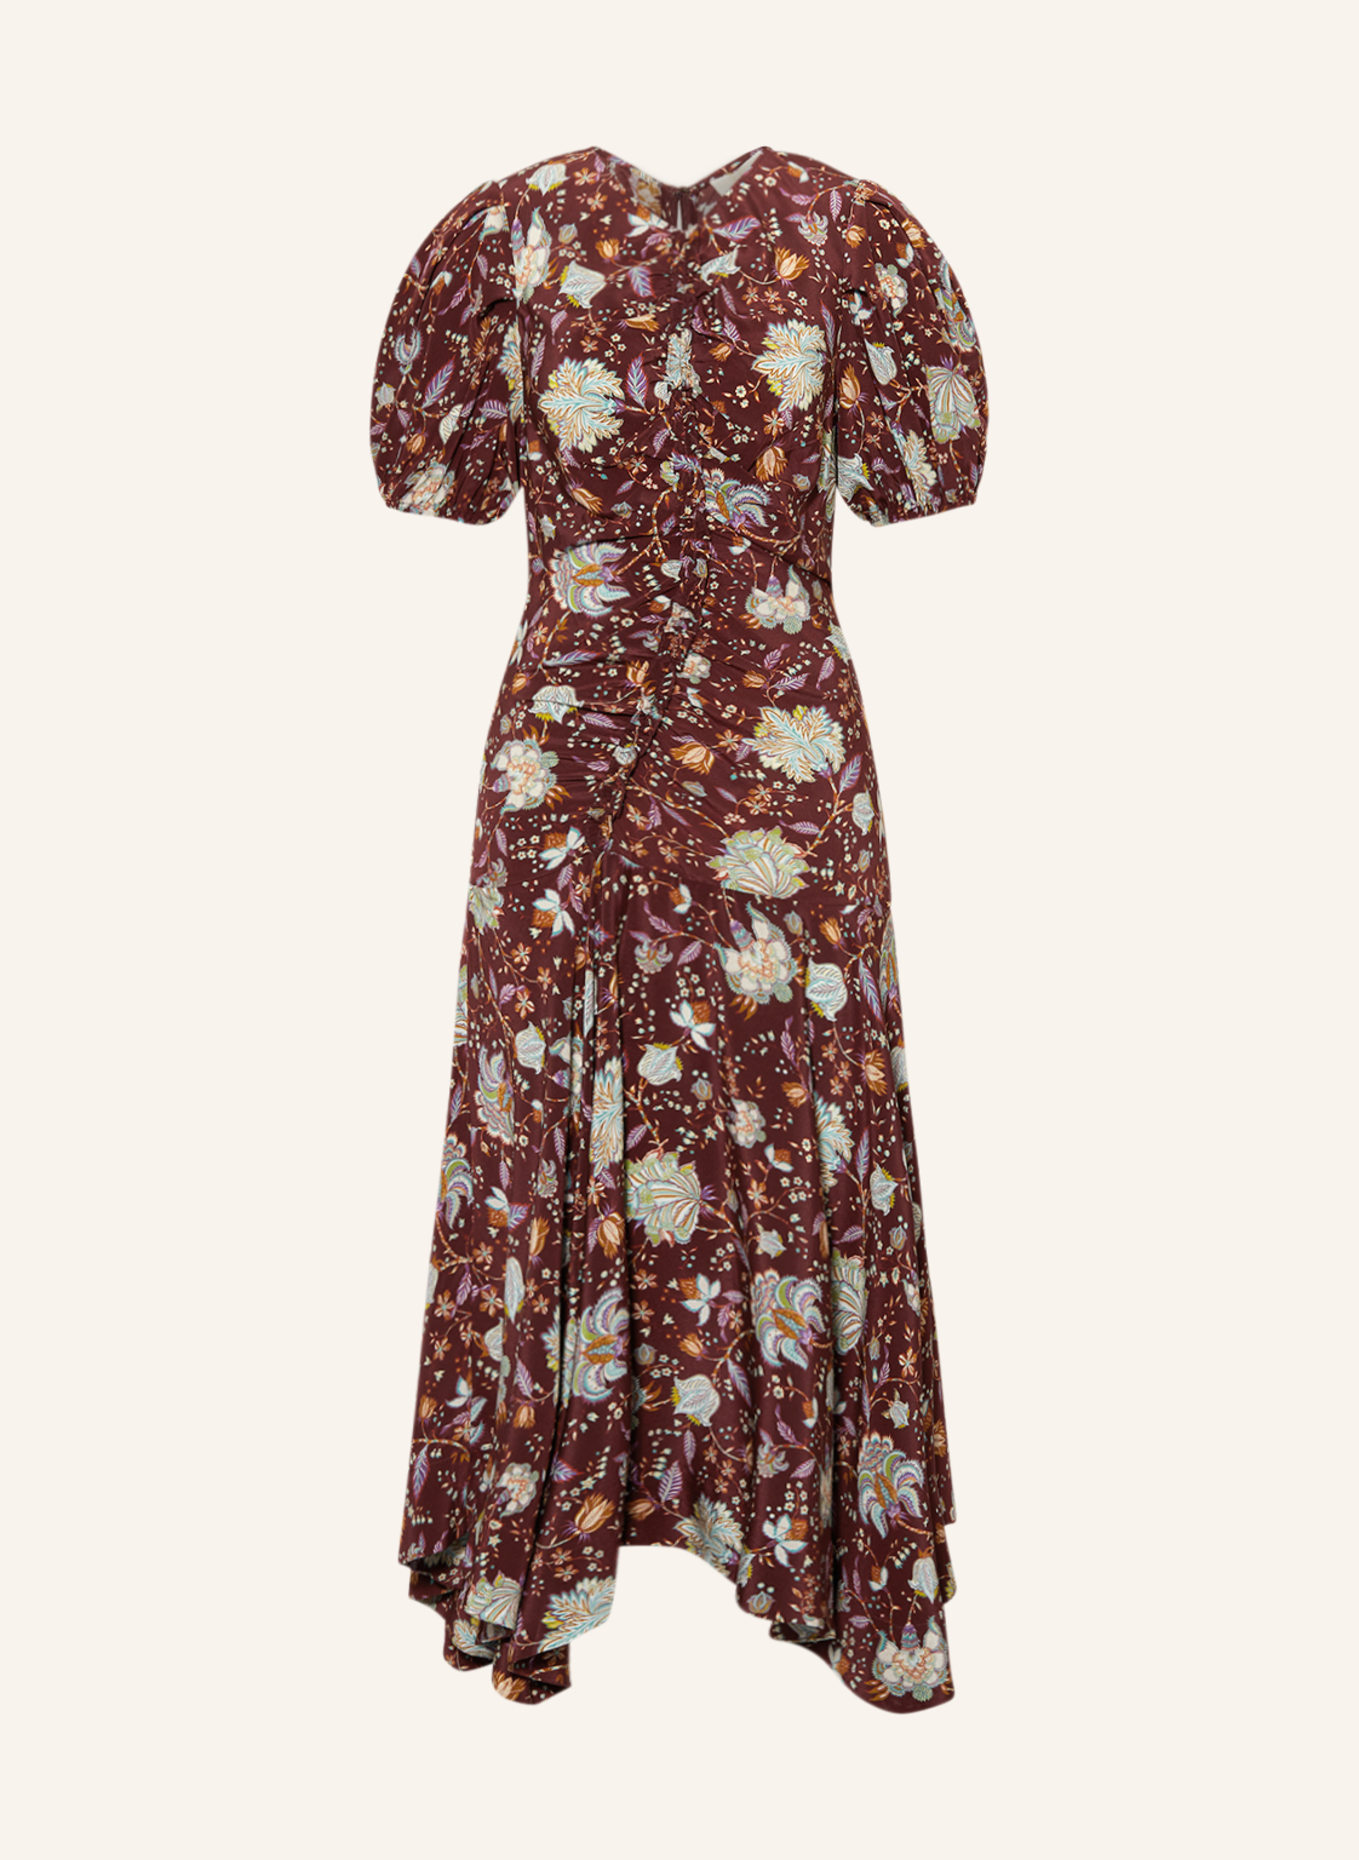 ULLA JOHNSON Kleid HELEEN, Farbe: DUNKELROT/ BRAUN/ LILA (Bild 1)